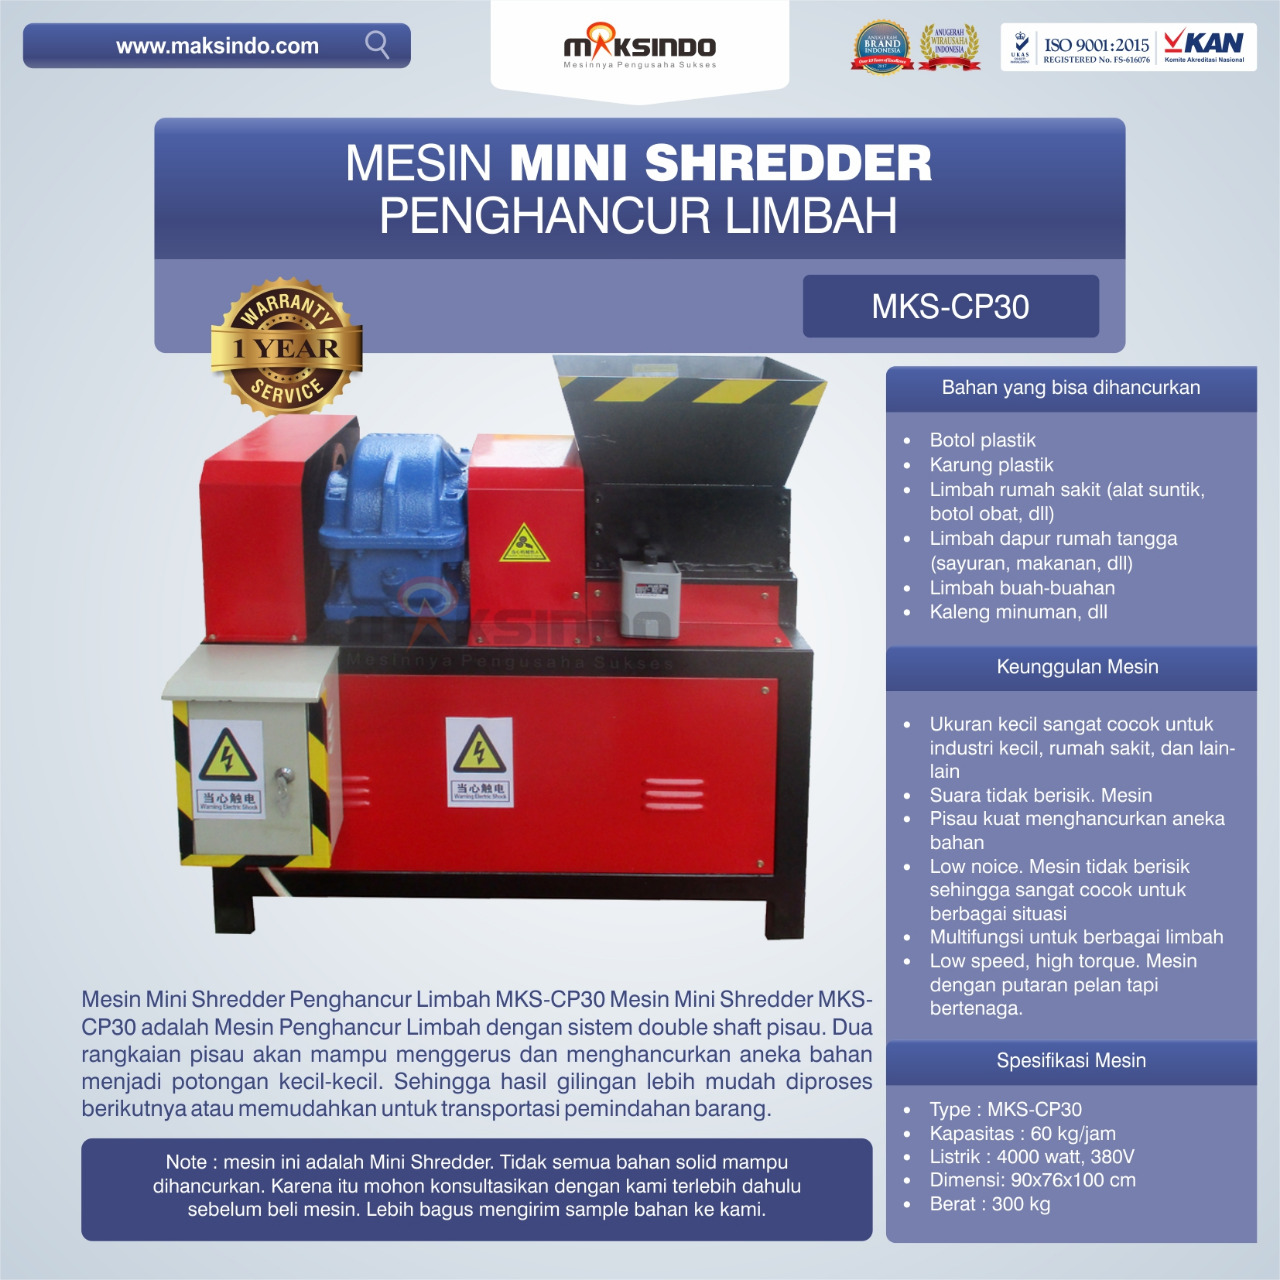 Jual Mesin Mini Shredder Penghancur Limbah MKS-CP30 di Semarang